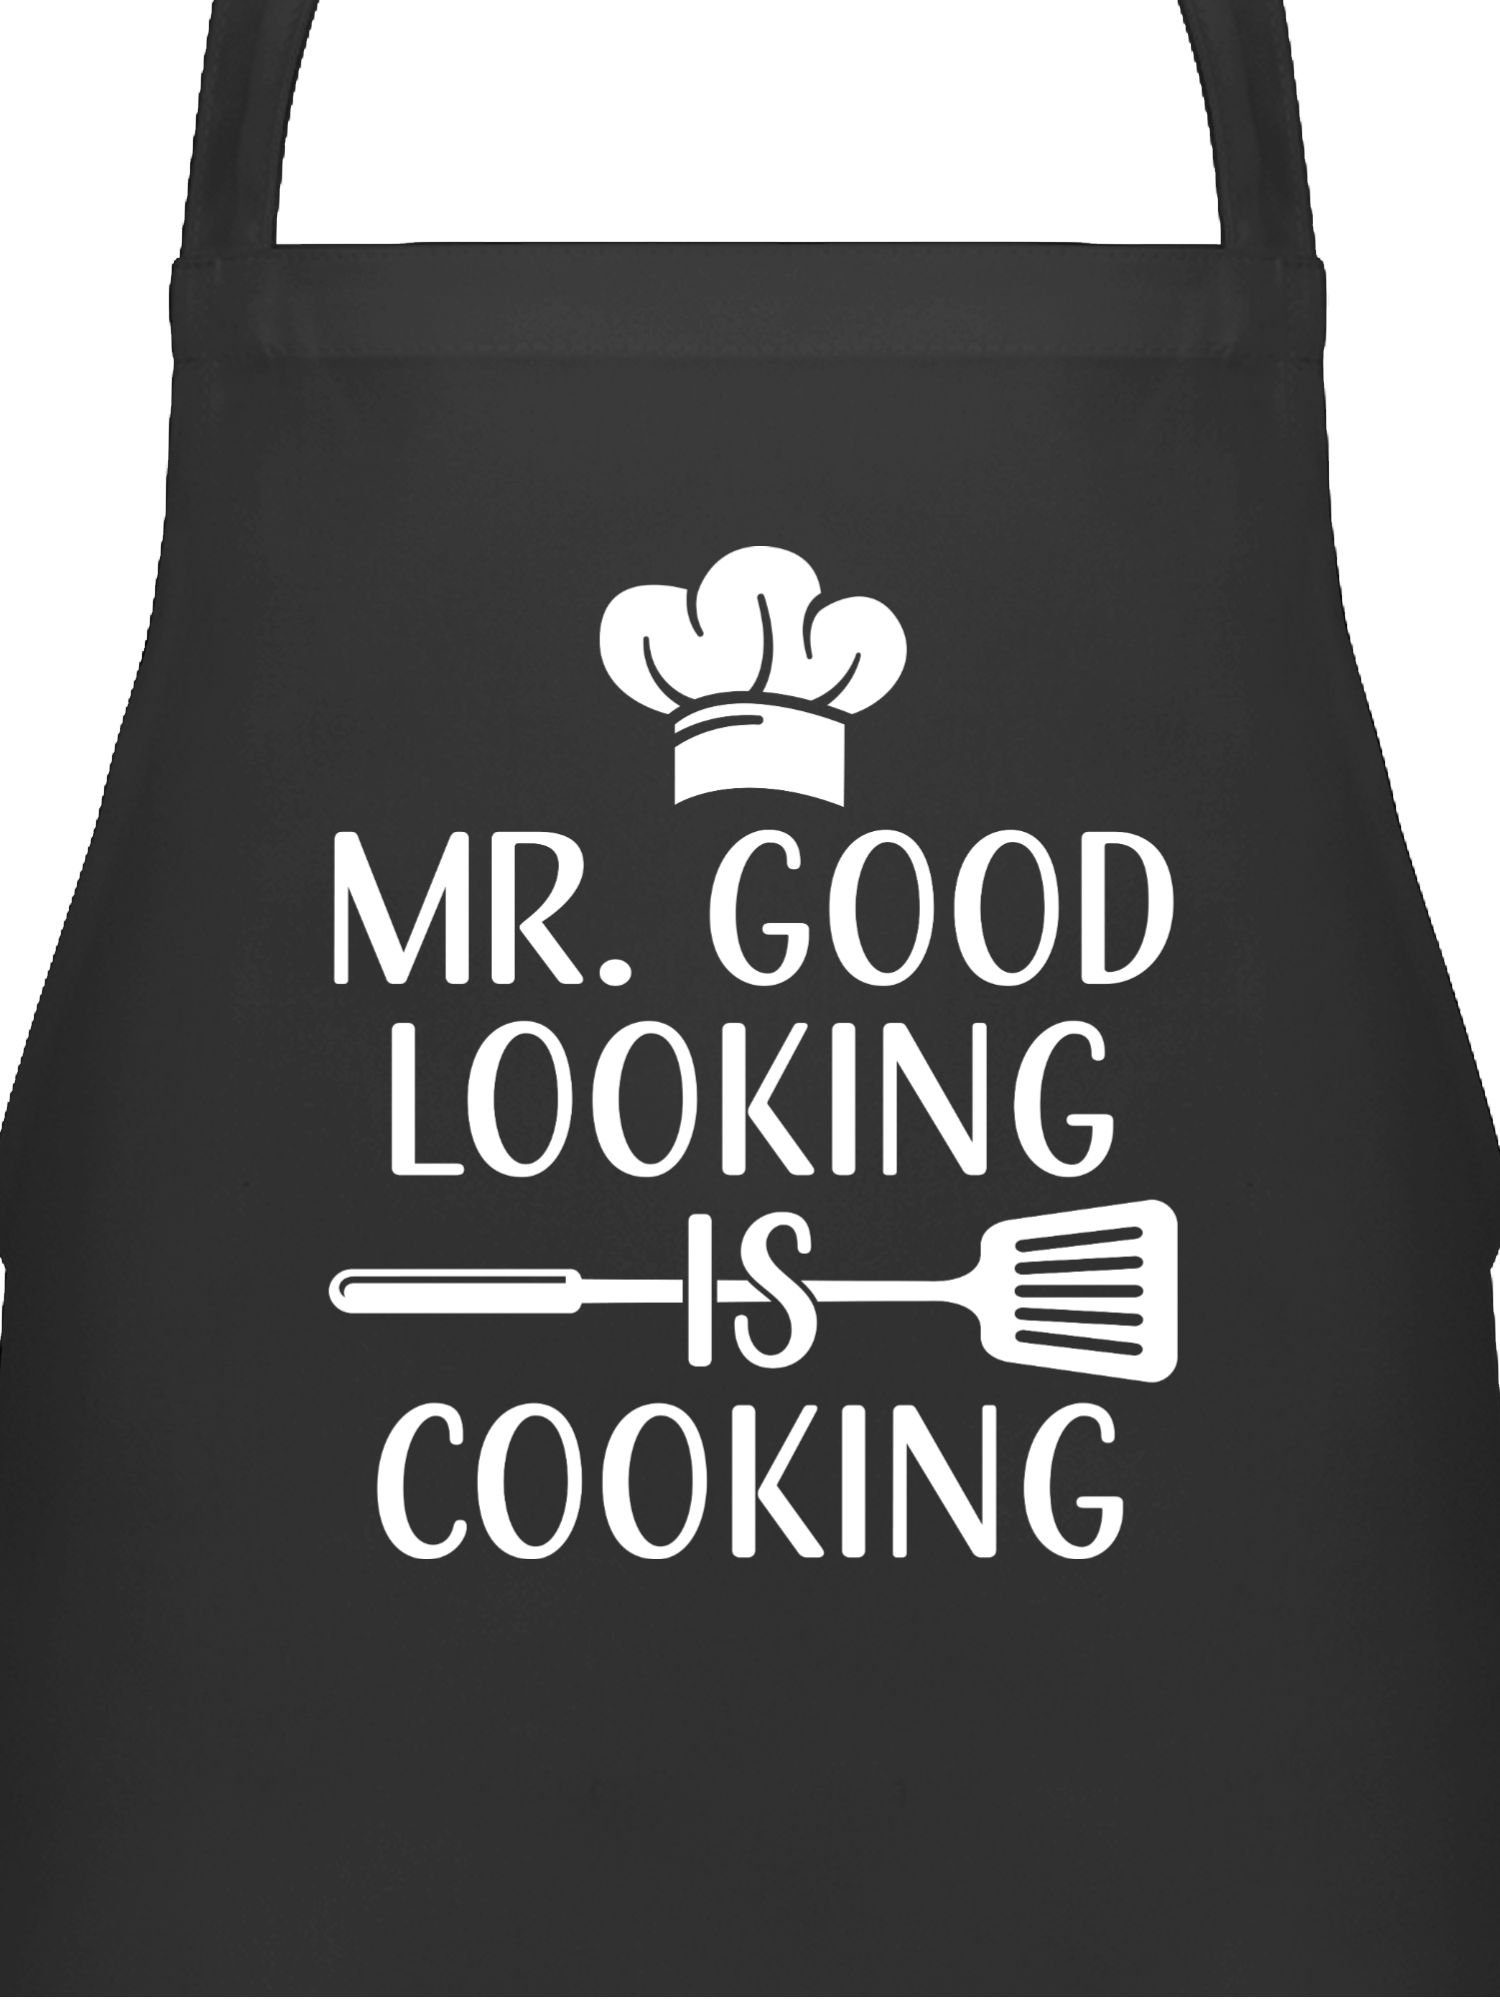 Shirtracer Kochschürze Mr. Good looking is cooking - Männergeschenke Weihnachten Männer Gesch, (1-tlg), Kochschürze Herren Männer